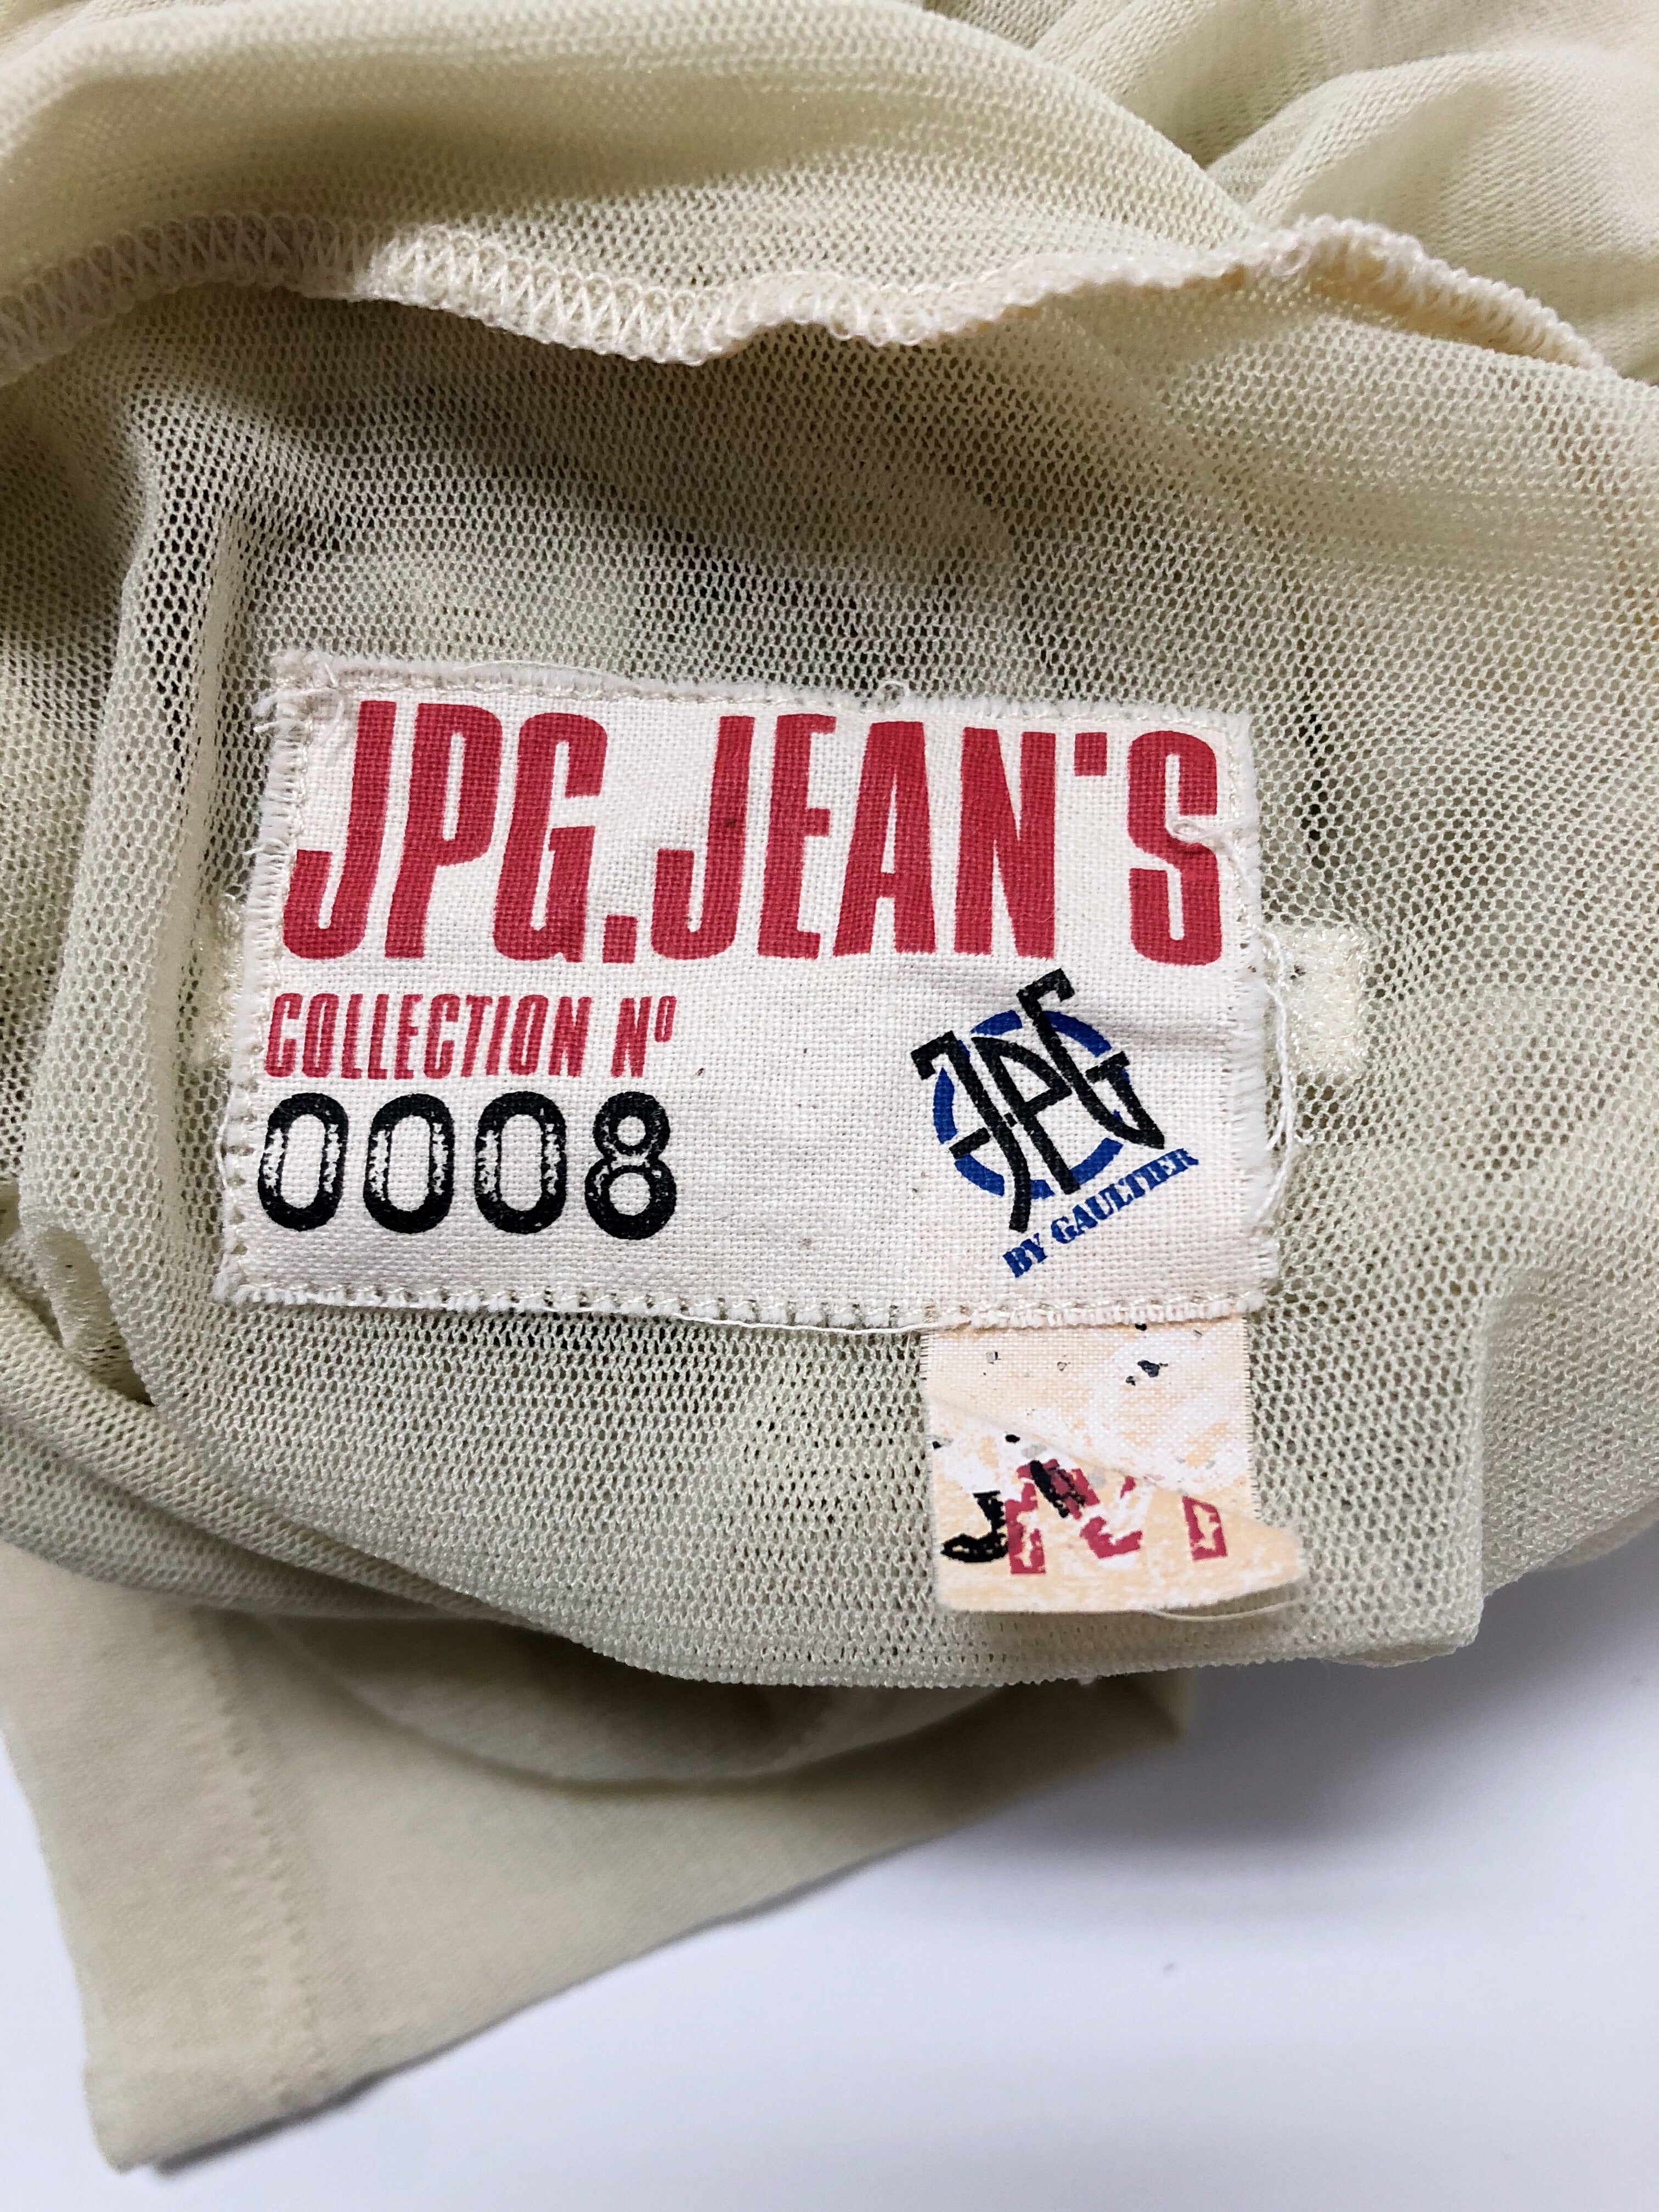 JPG Jean’s Printed Turtleneck